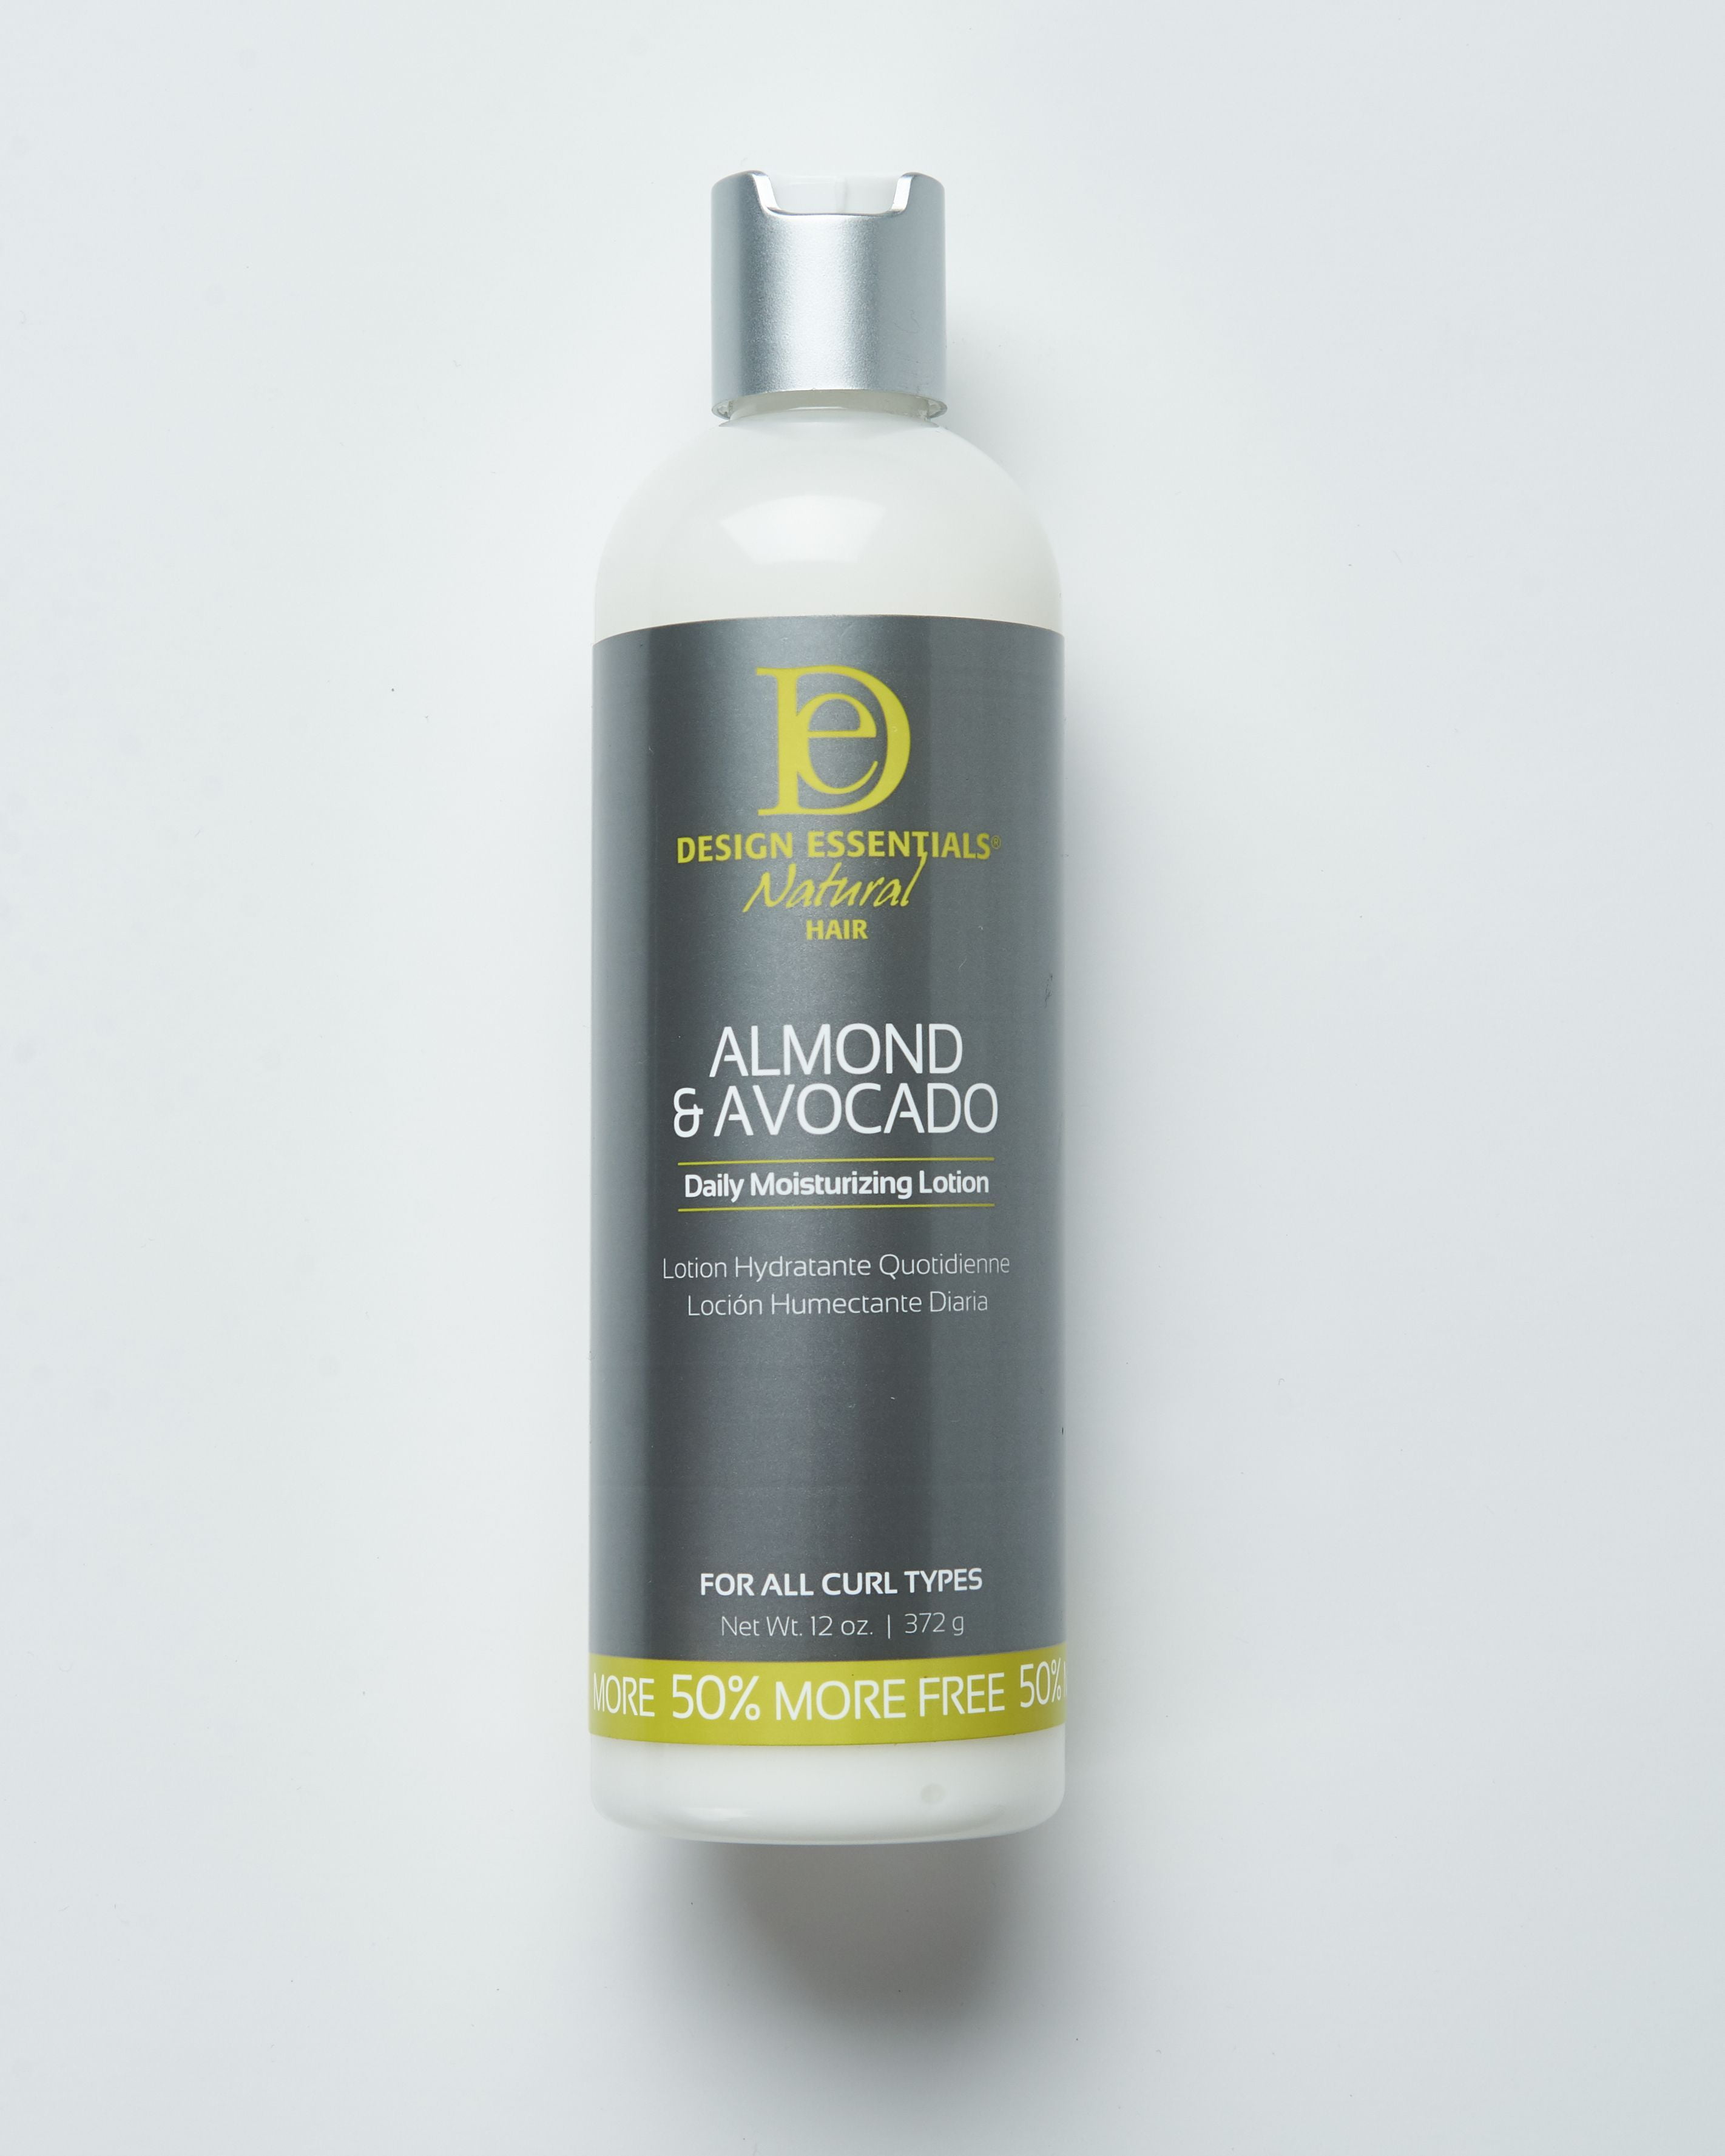 Design essentials Almond & Avocado Leave-in Conditioner 6oz Free Shipping